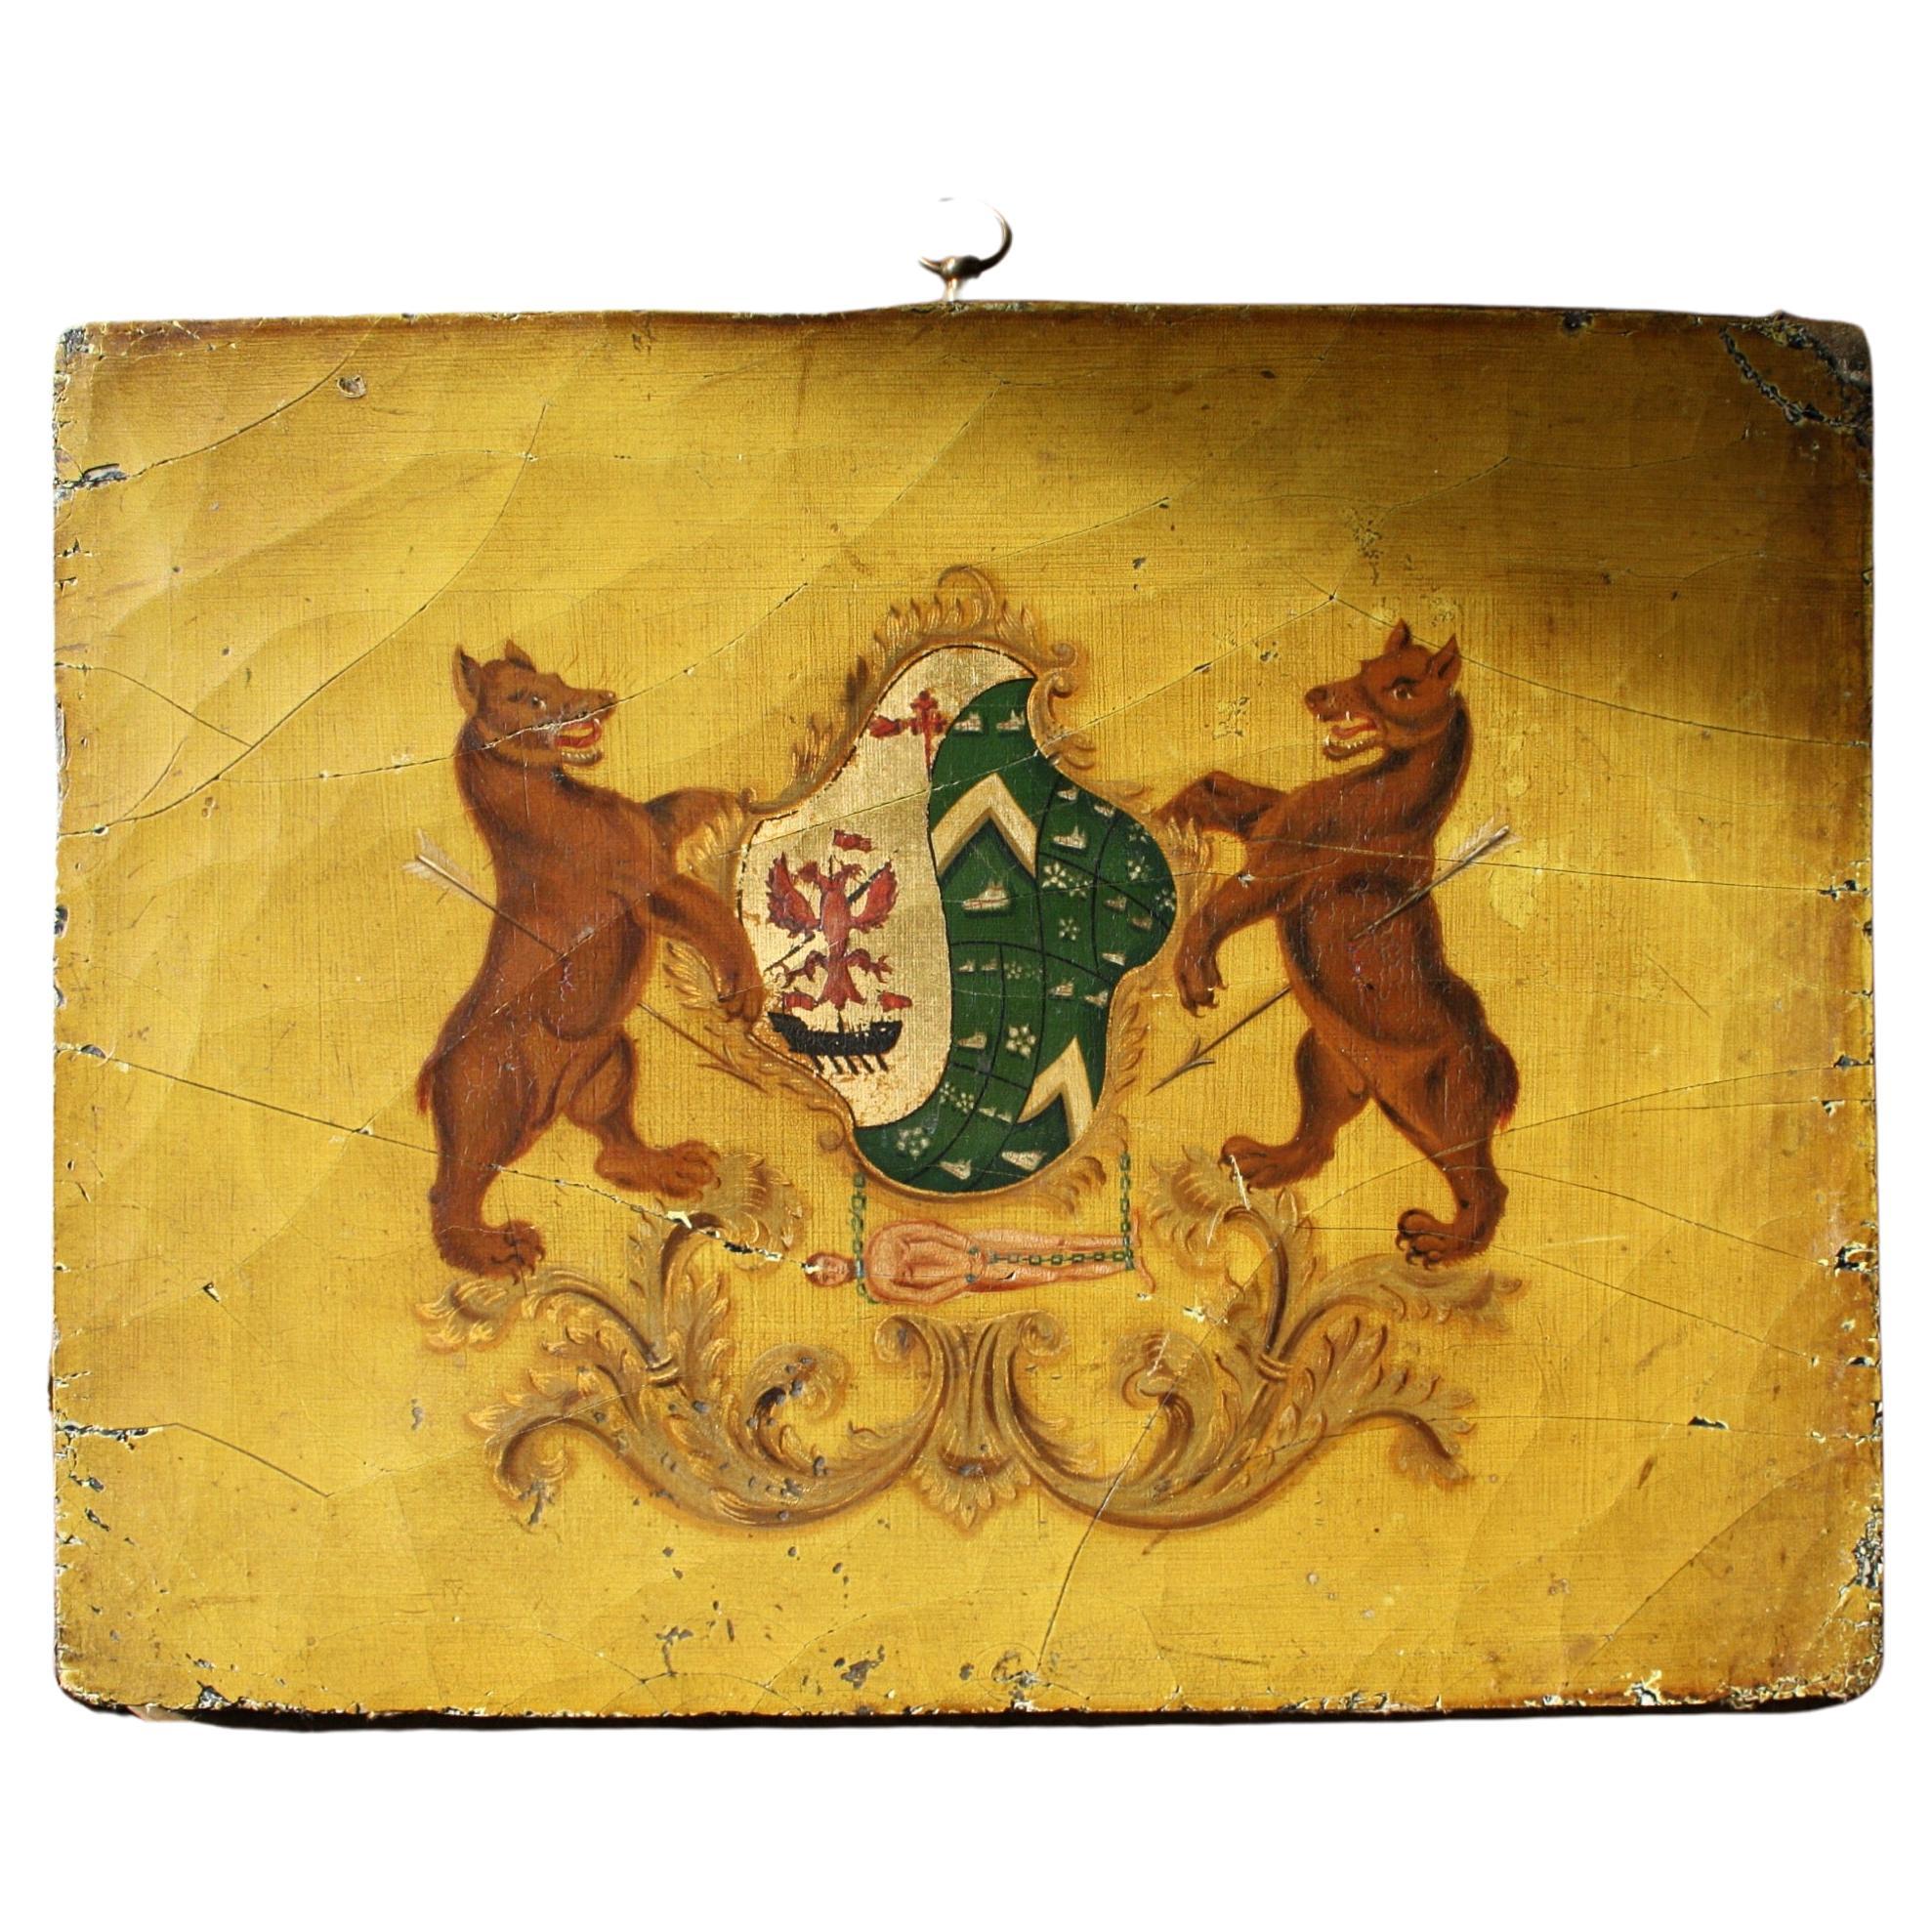 Début du 19e siècle Huile sur panneau Panneau de carrosse Armoiries Héraldique